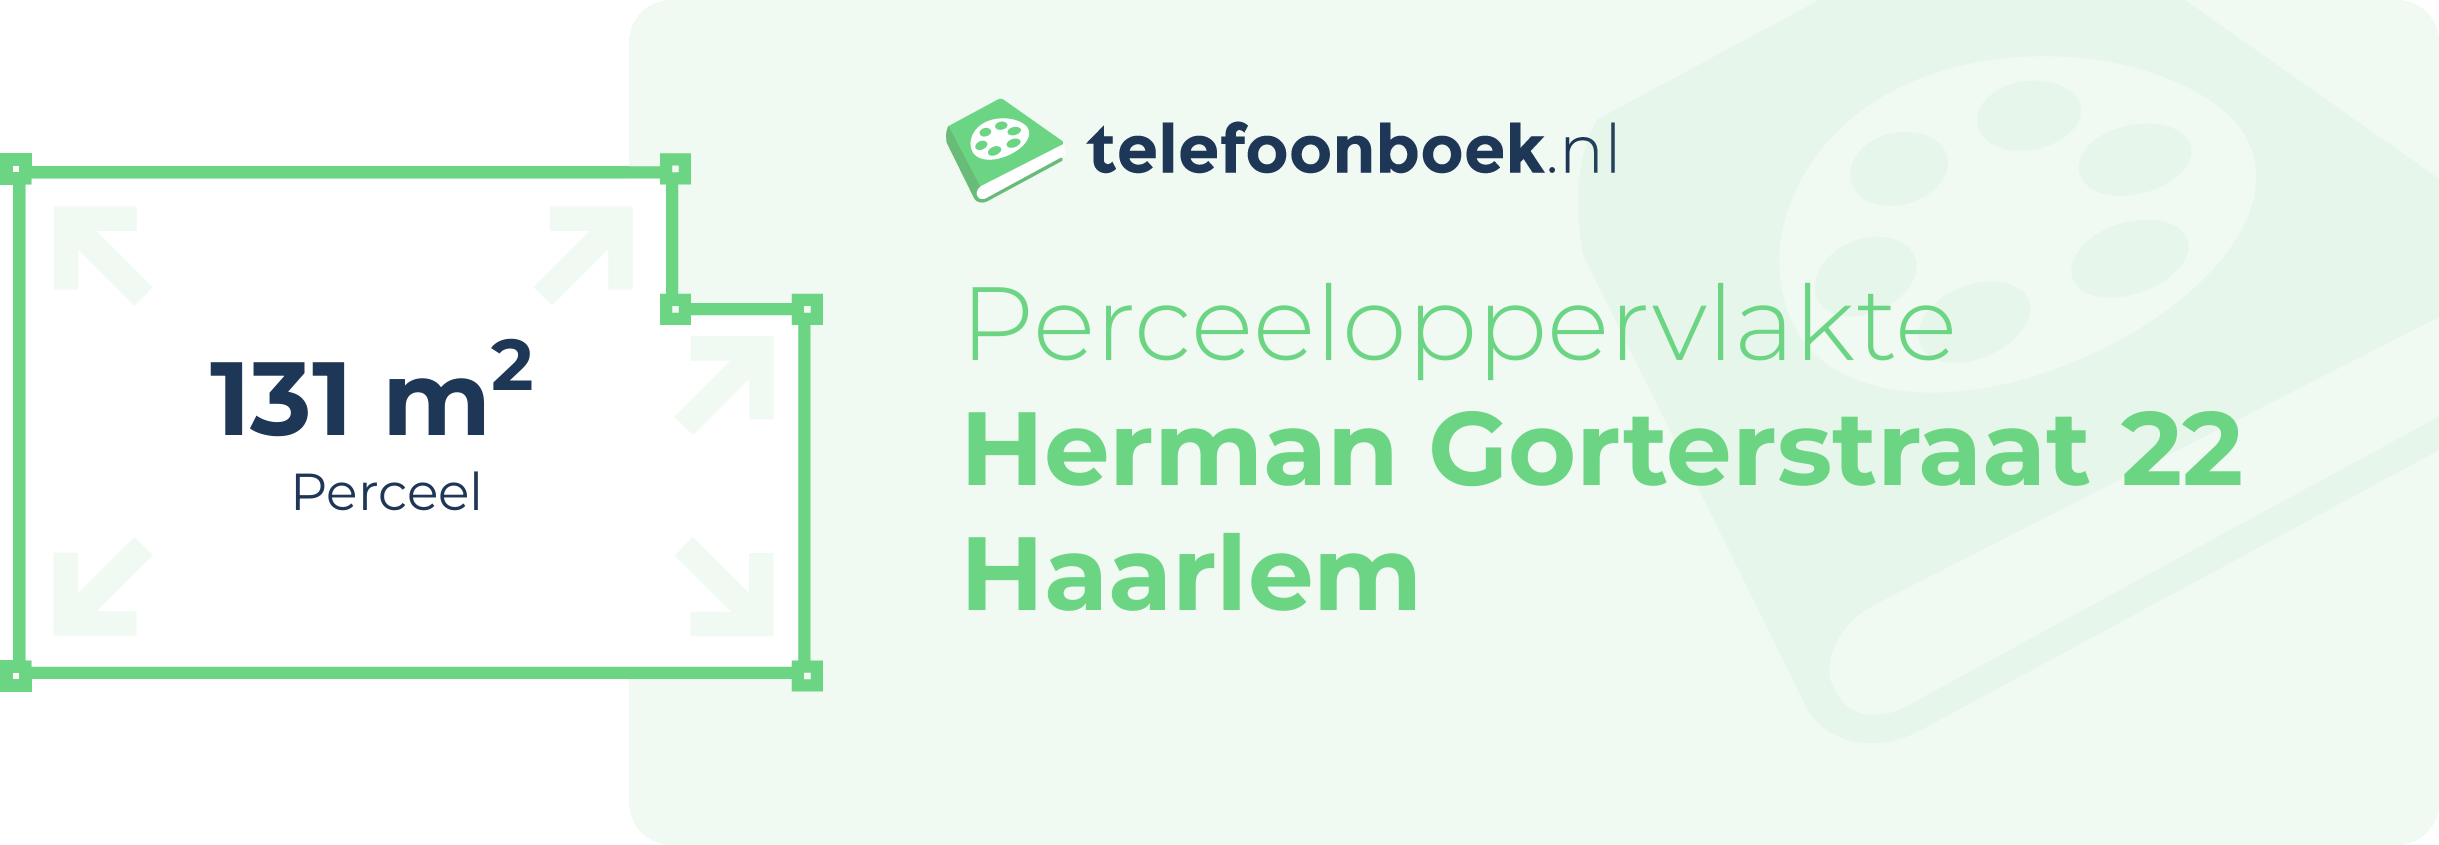 Perceeloppervlakte Herman Gorterstraat 22 Haarlem